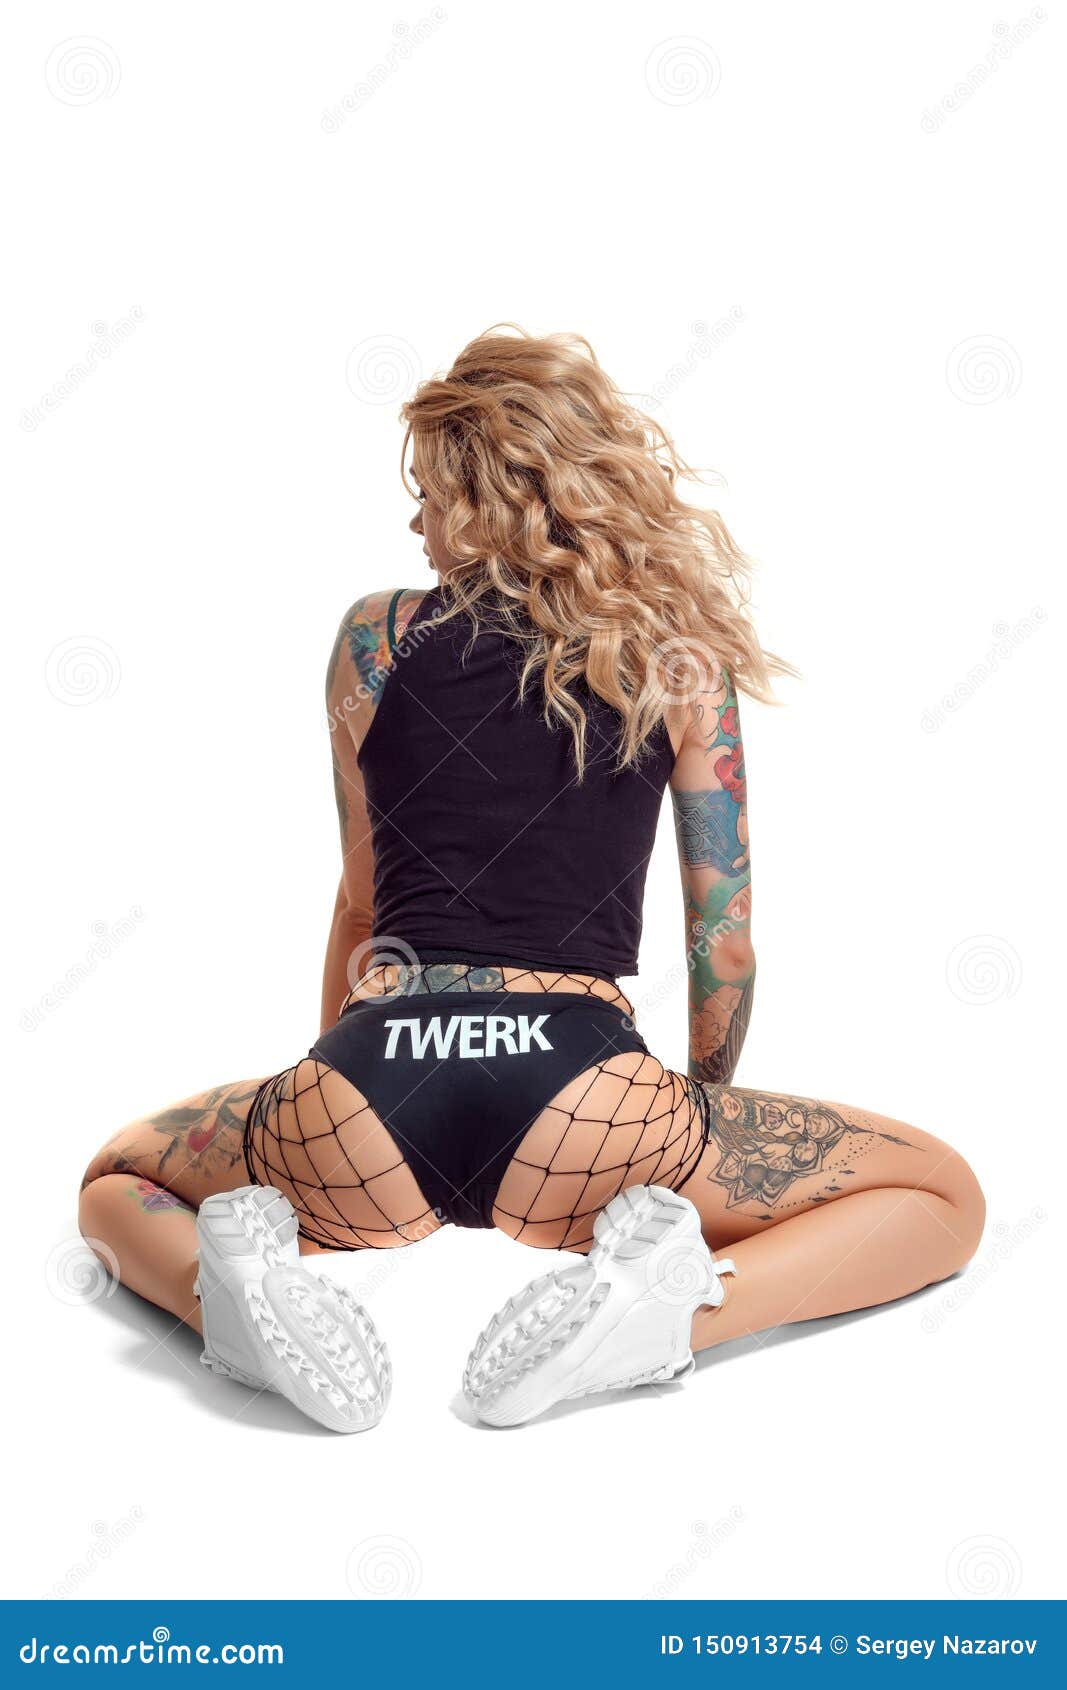 carol wisneiski recommends hot blonde girls twerking pic